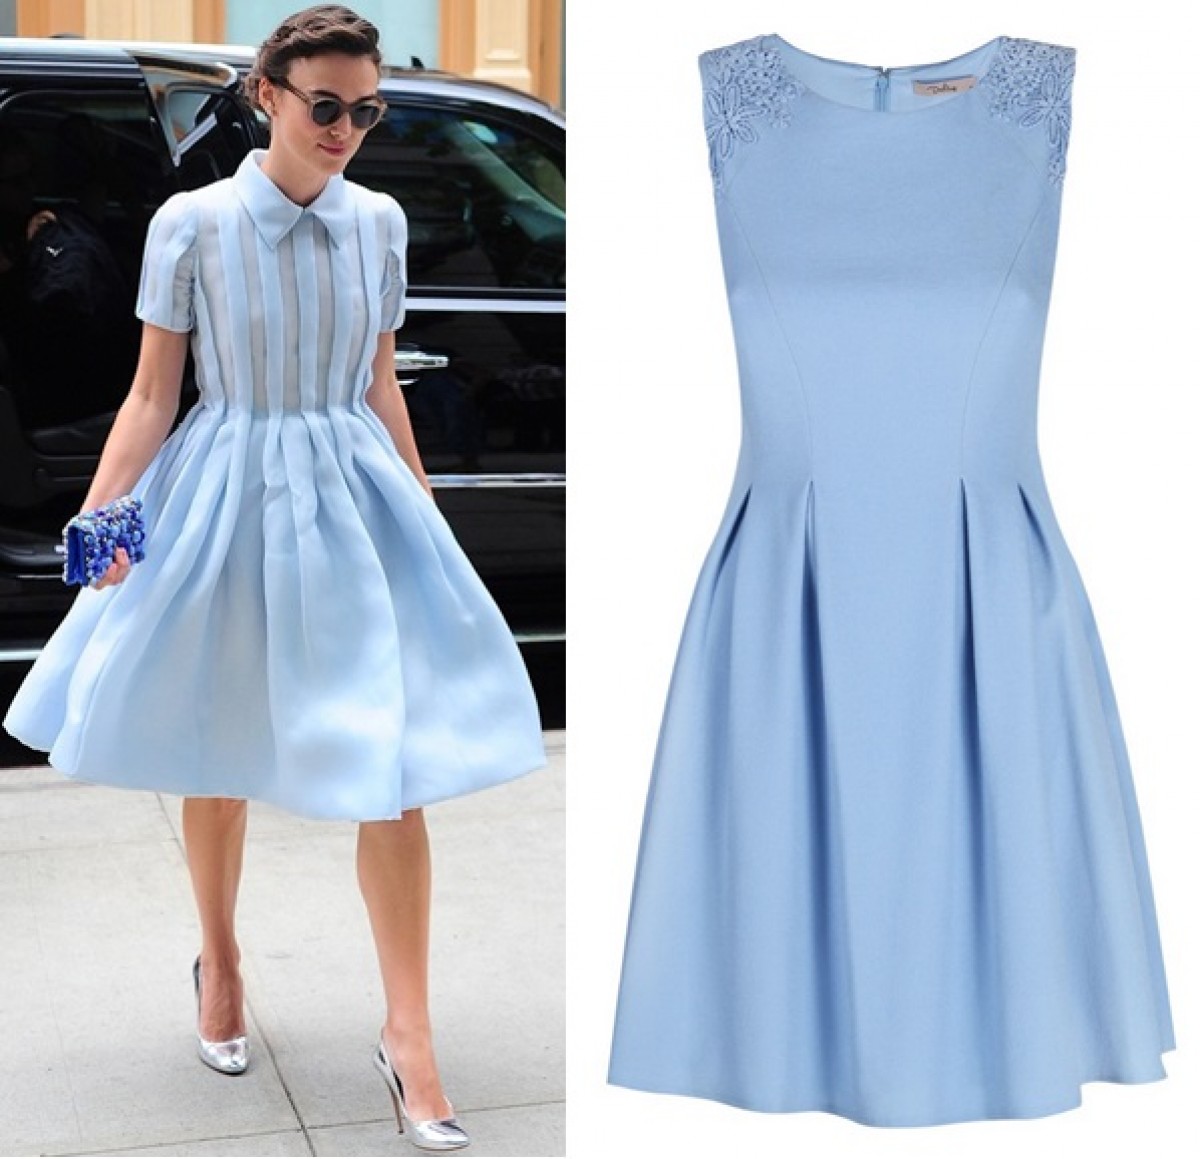 Khẳng định phong cách thời trang thanh lịch với váy xanh pastel